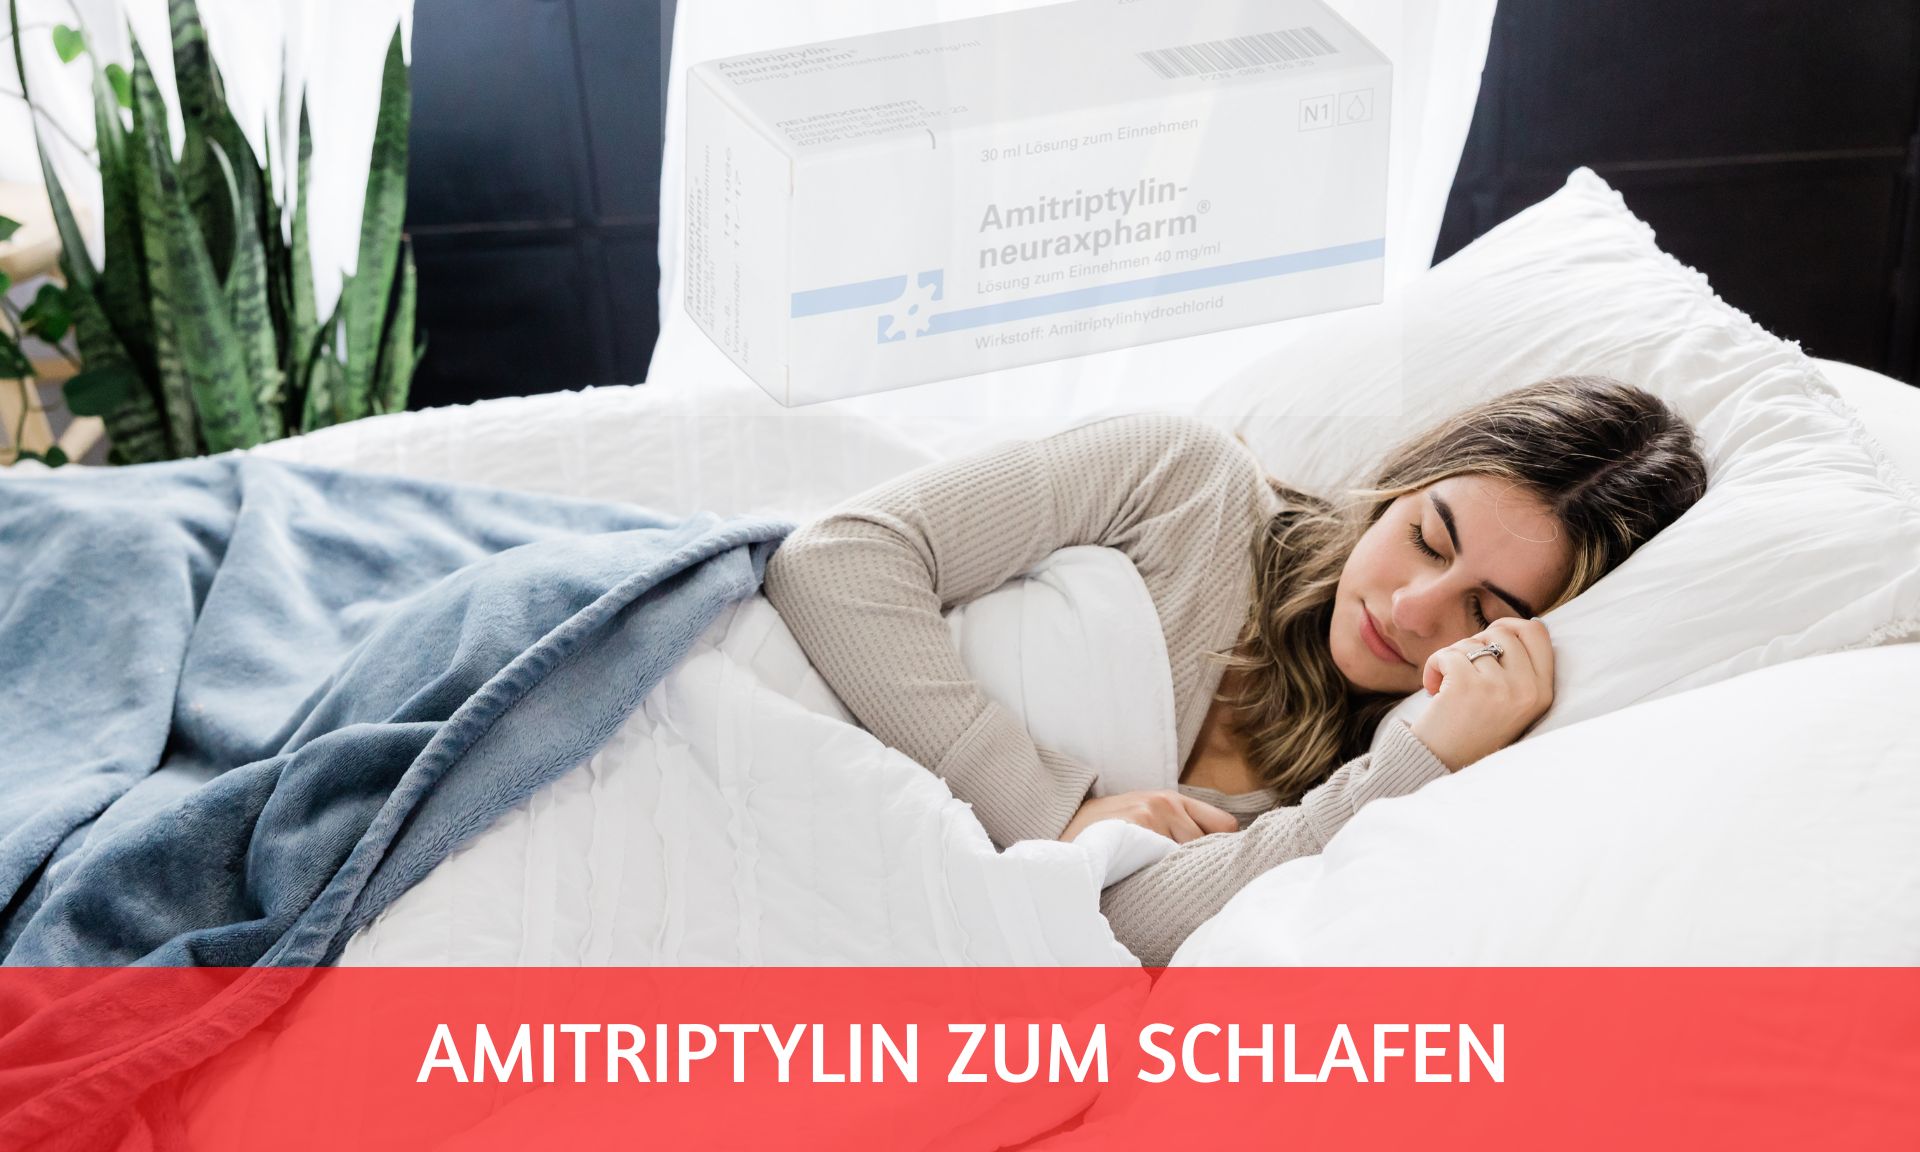 Amitriptylin zum Schlafen: wie gut hilft es?